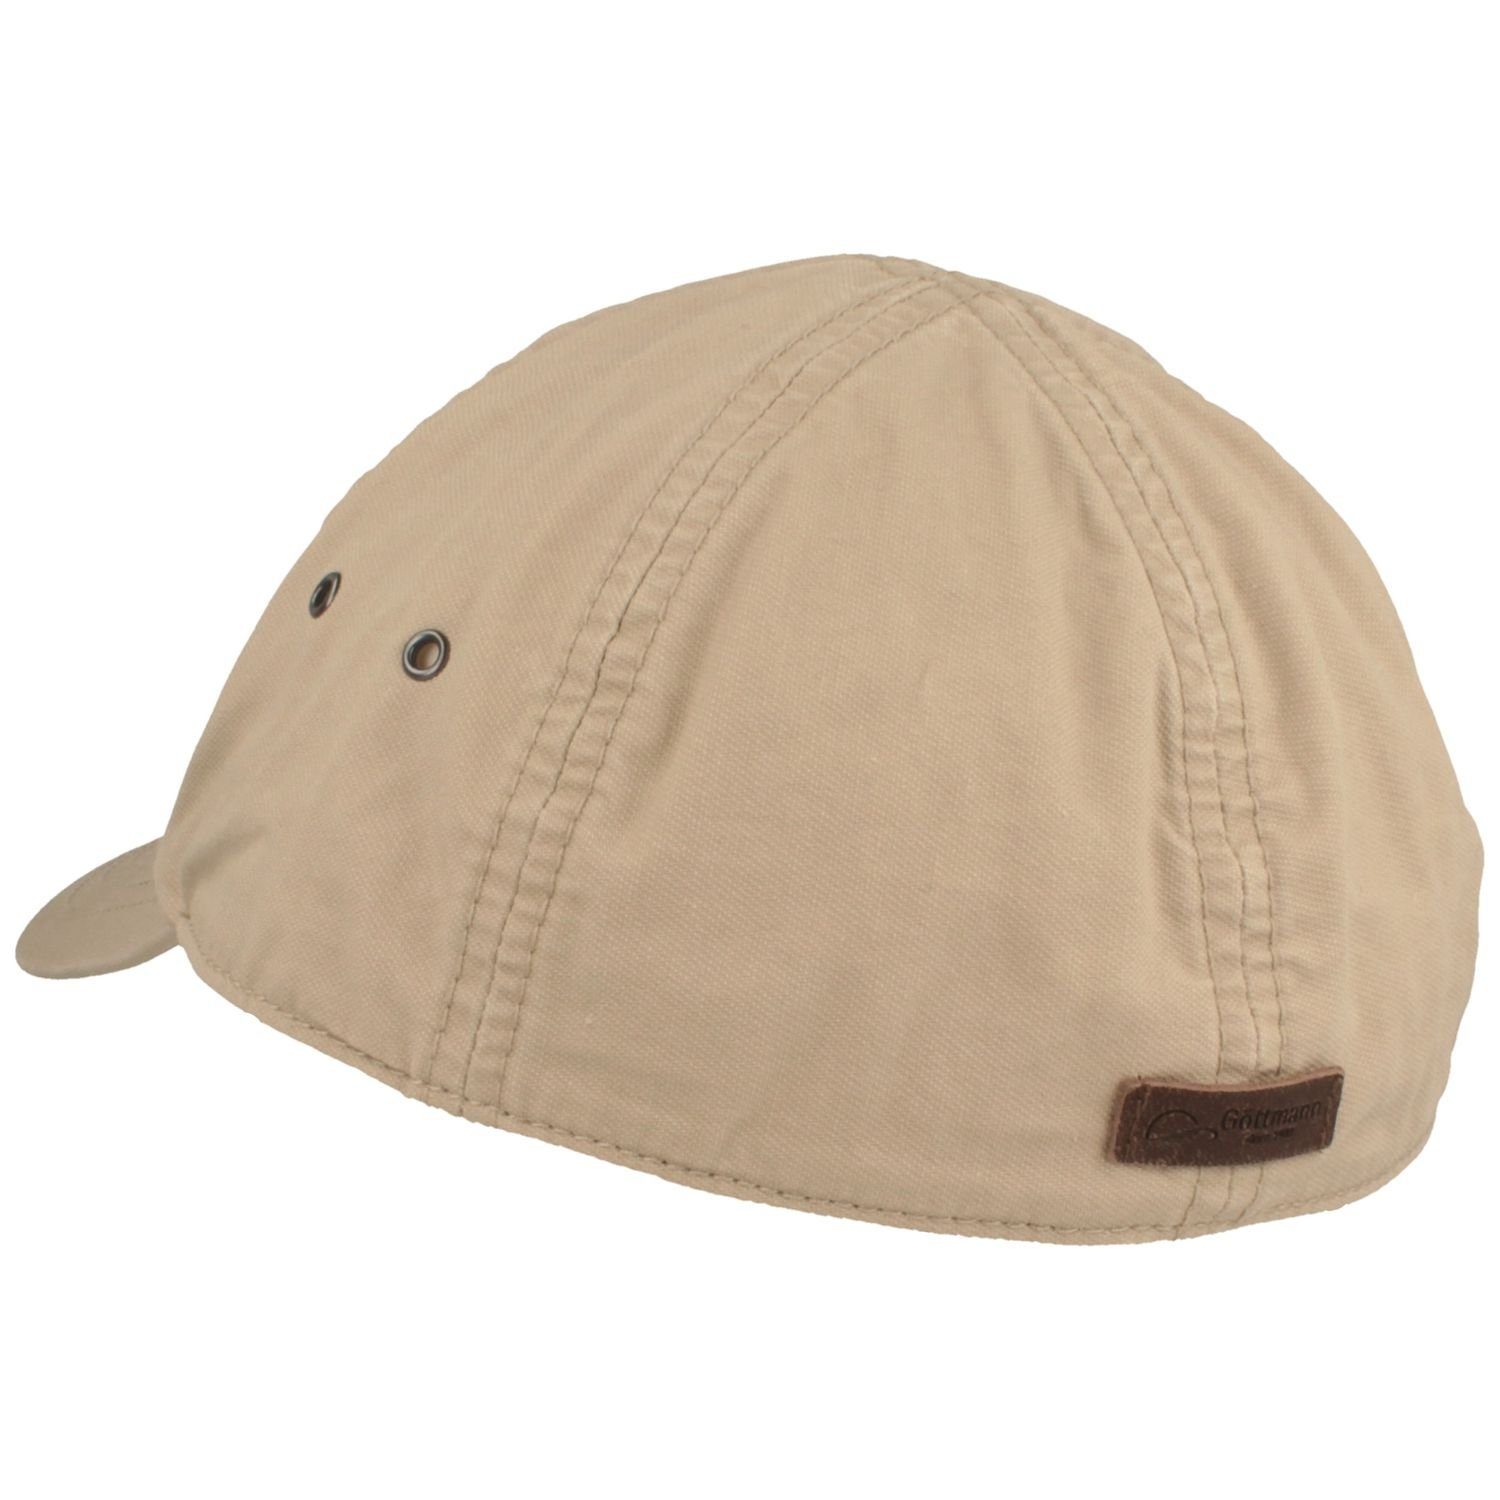 Göttmann Baseball Cap mit UV-Schutz 40+ beige aus Baumwolle 10